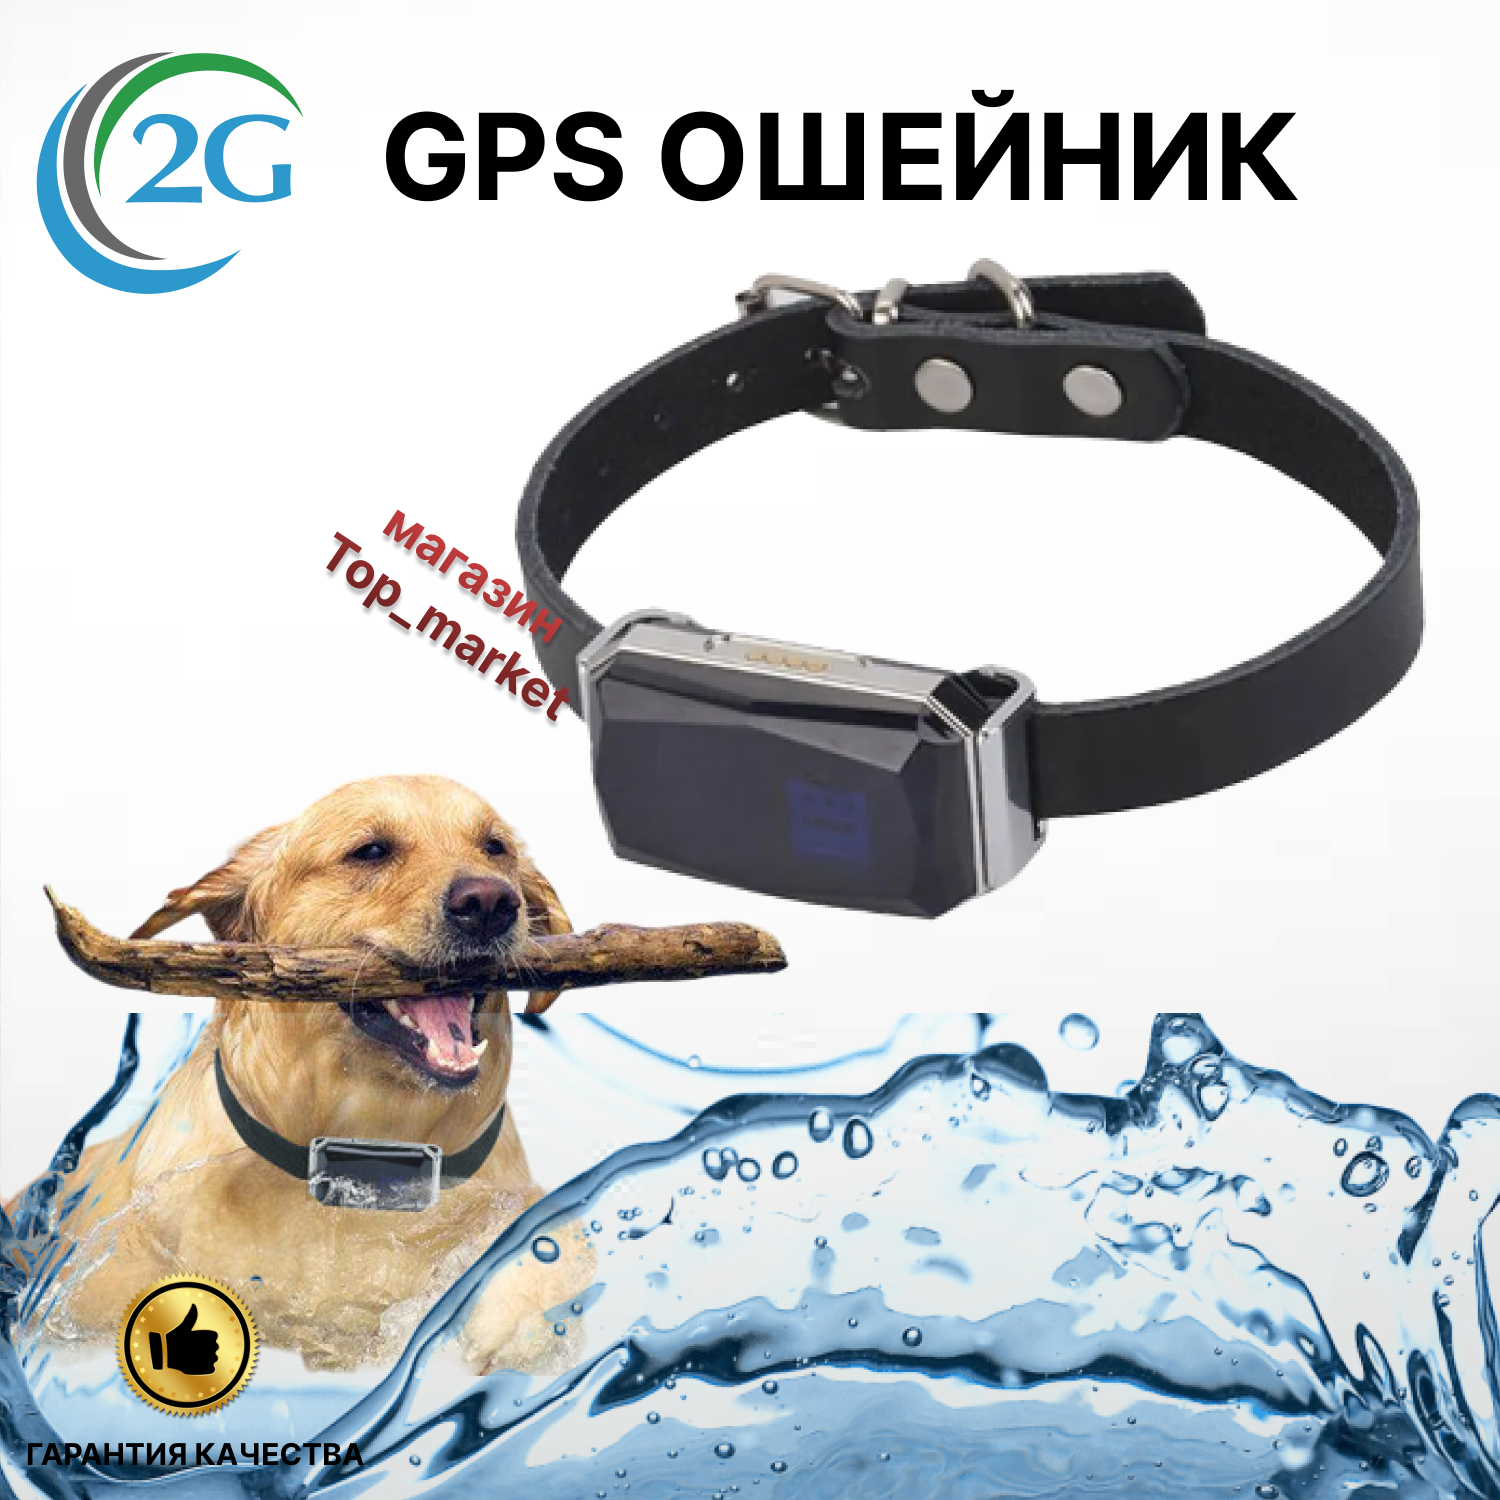 GPS-трекер GPOINT 12P для собак, котов и кошек с ошейником, SIM 2G, до 15 дней работы, мобильное приложение